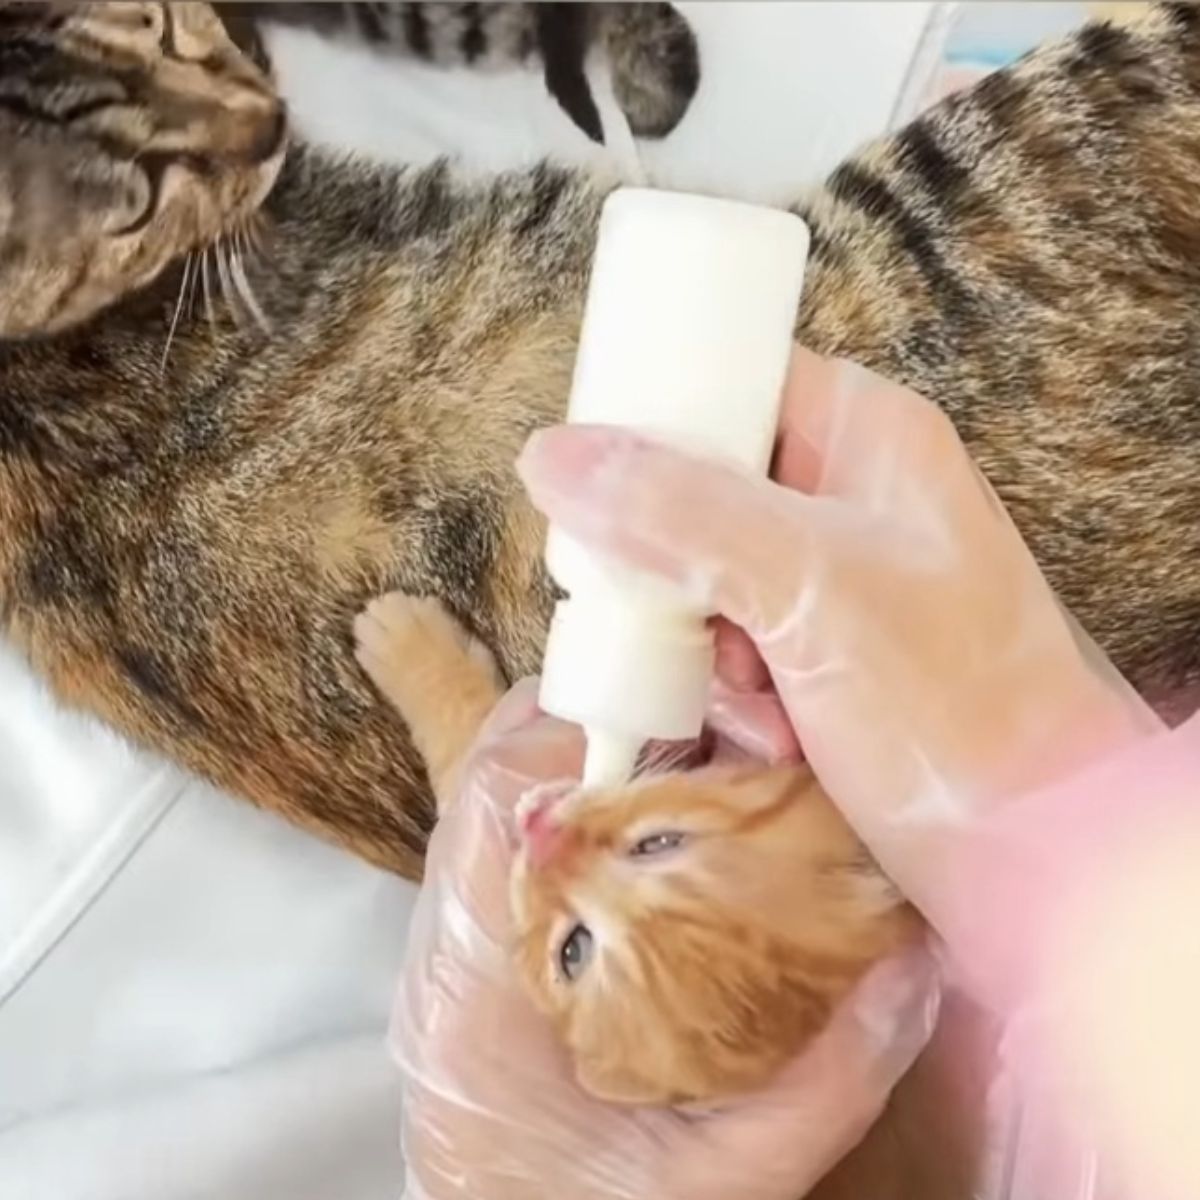 bottle feeding a kitten